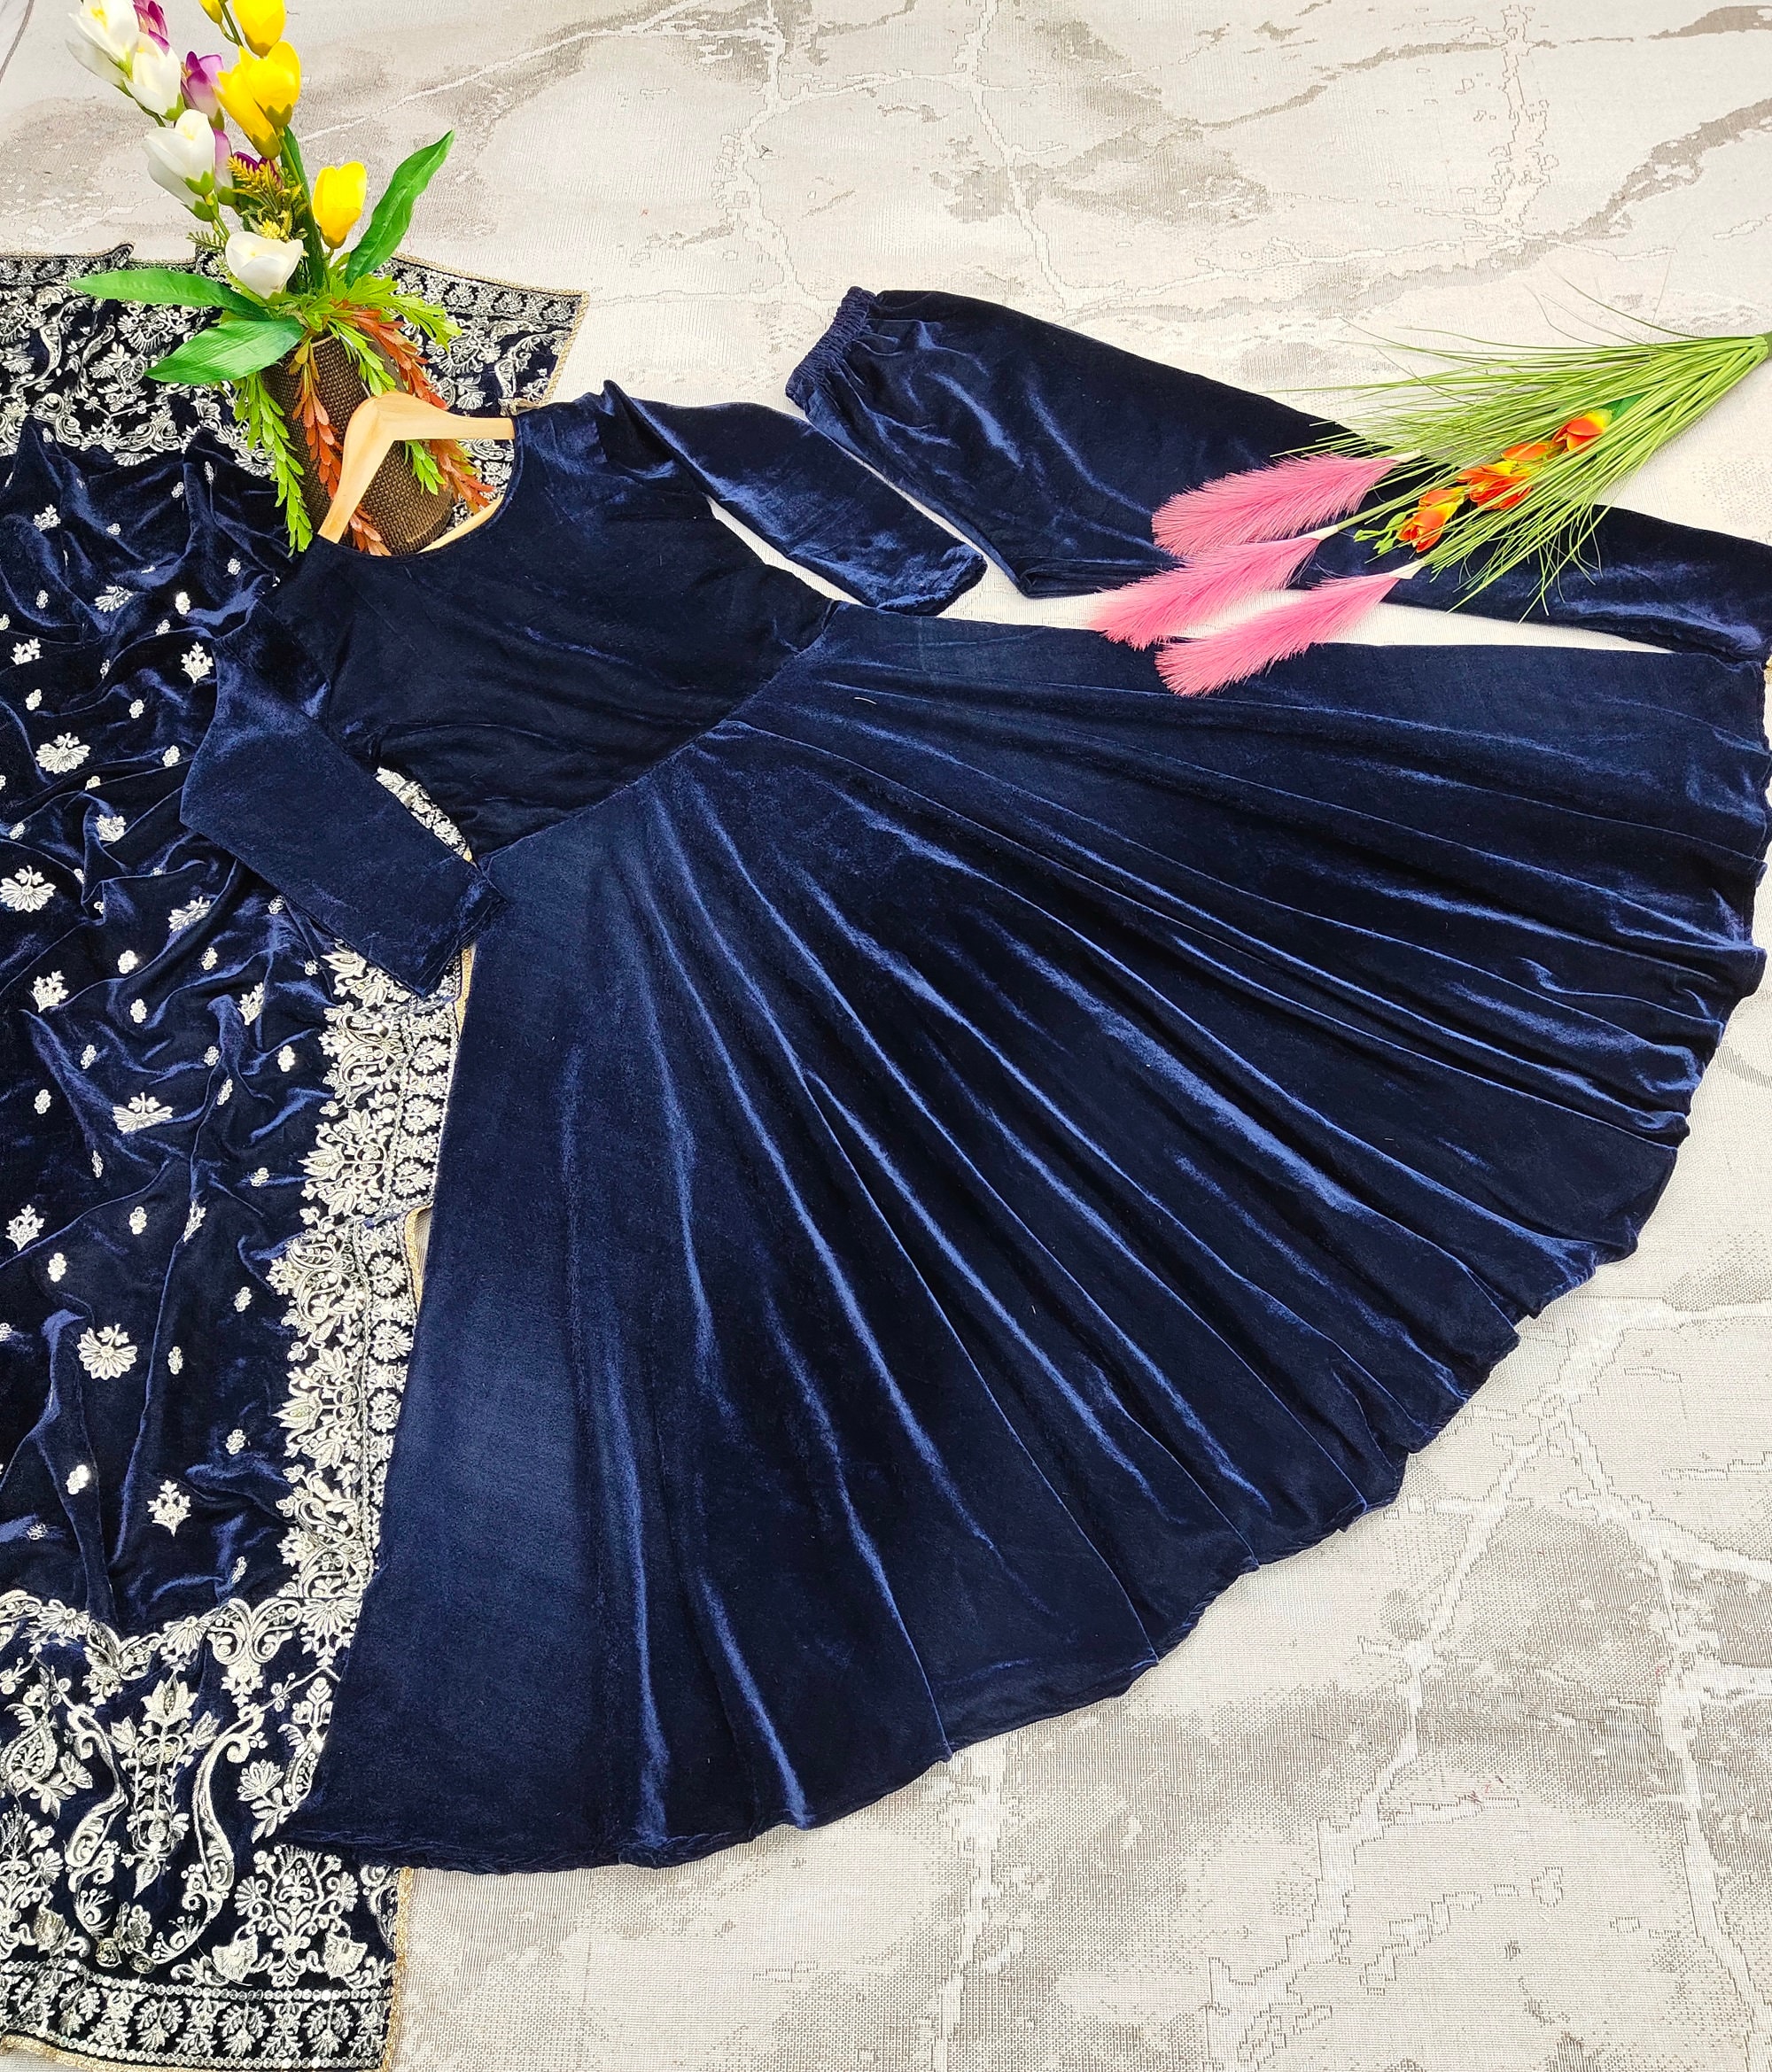 Bebe Clothing Dress|elegant Velvet Girls Party Dress - Knee-length Princess  Gown For Weddings & Birthdays